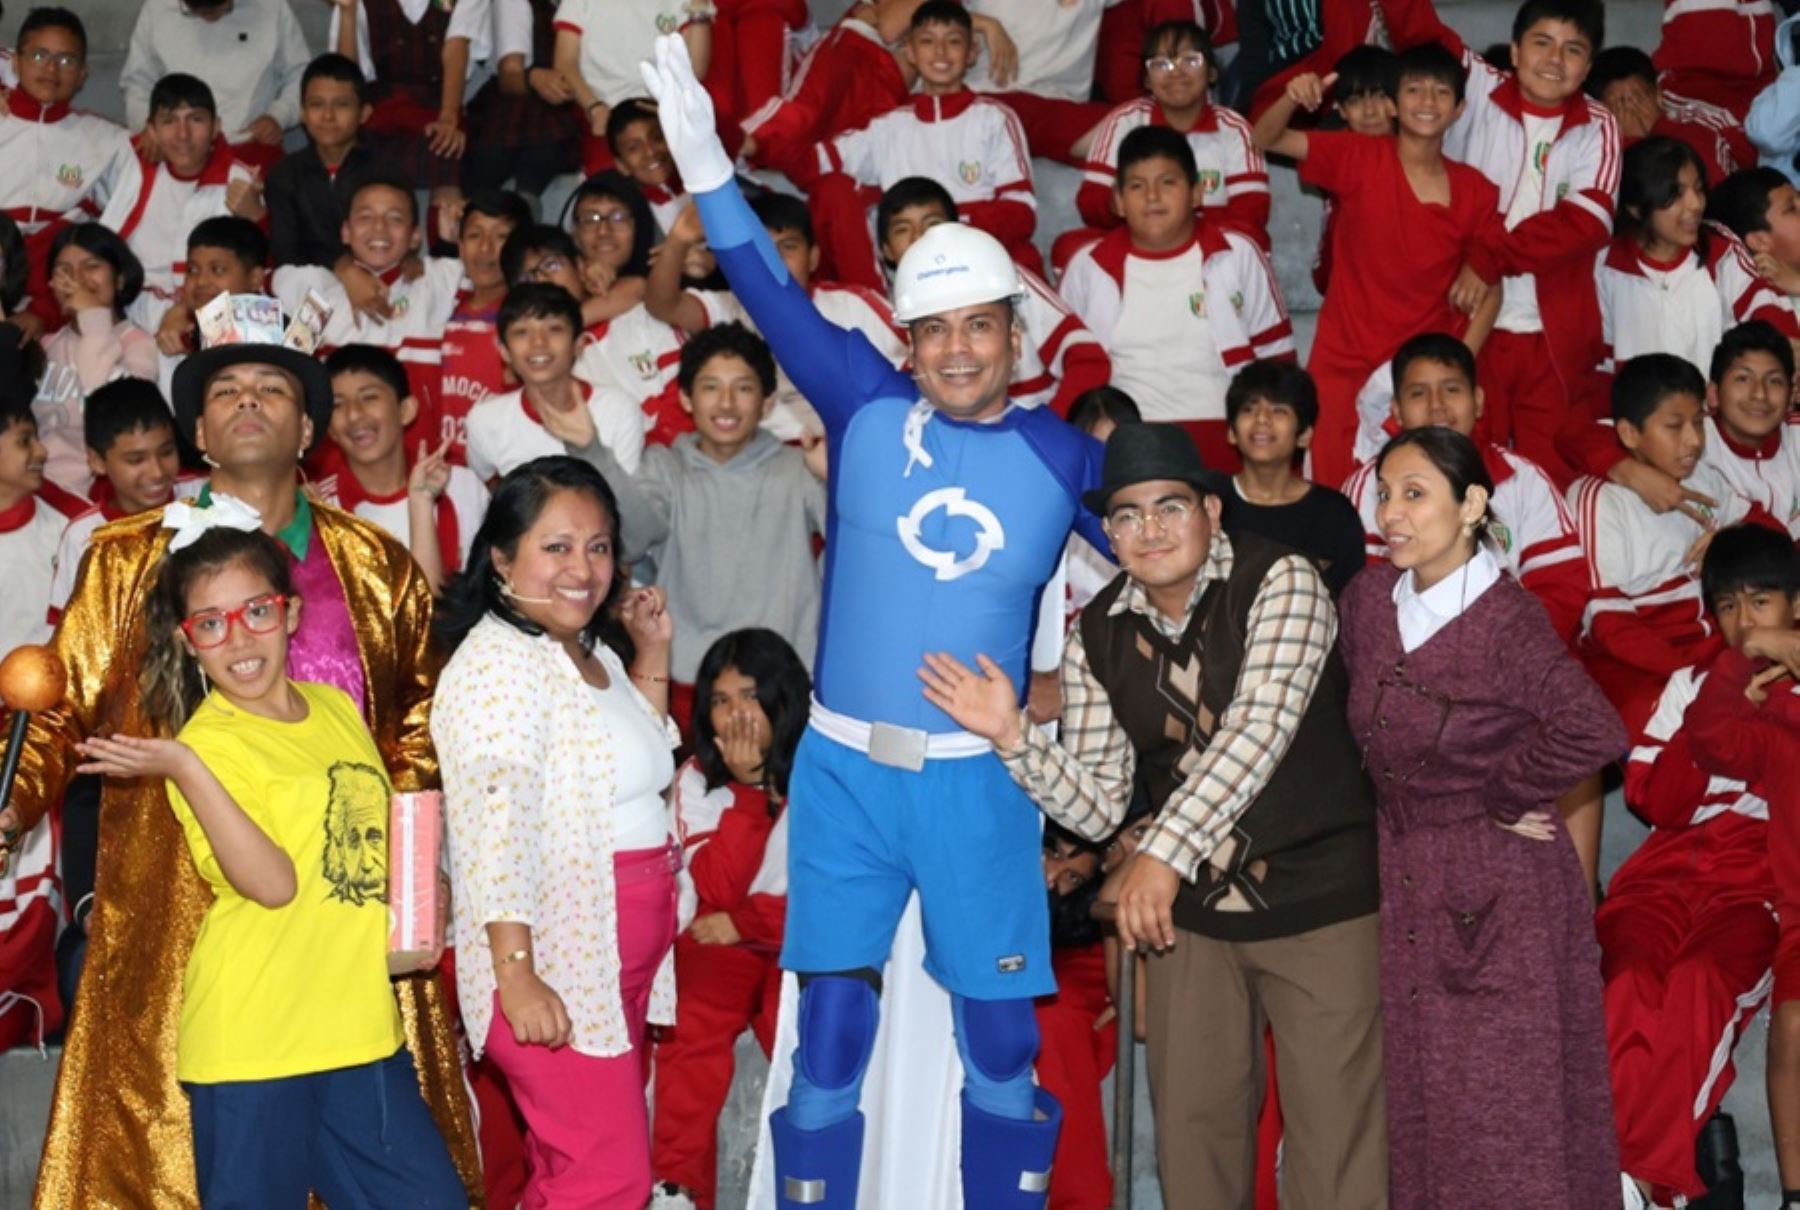 En el marco de su campaña “La gran caravana de la energía”, Osinergmin inició su gira teatral educativa, que tendrá presentaciones en colegios del Callao, Ica, Ayacucho, Cajamarca, Chachapoyas y Tarapoto.